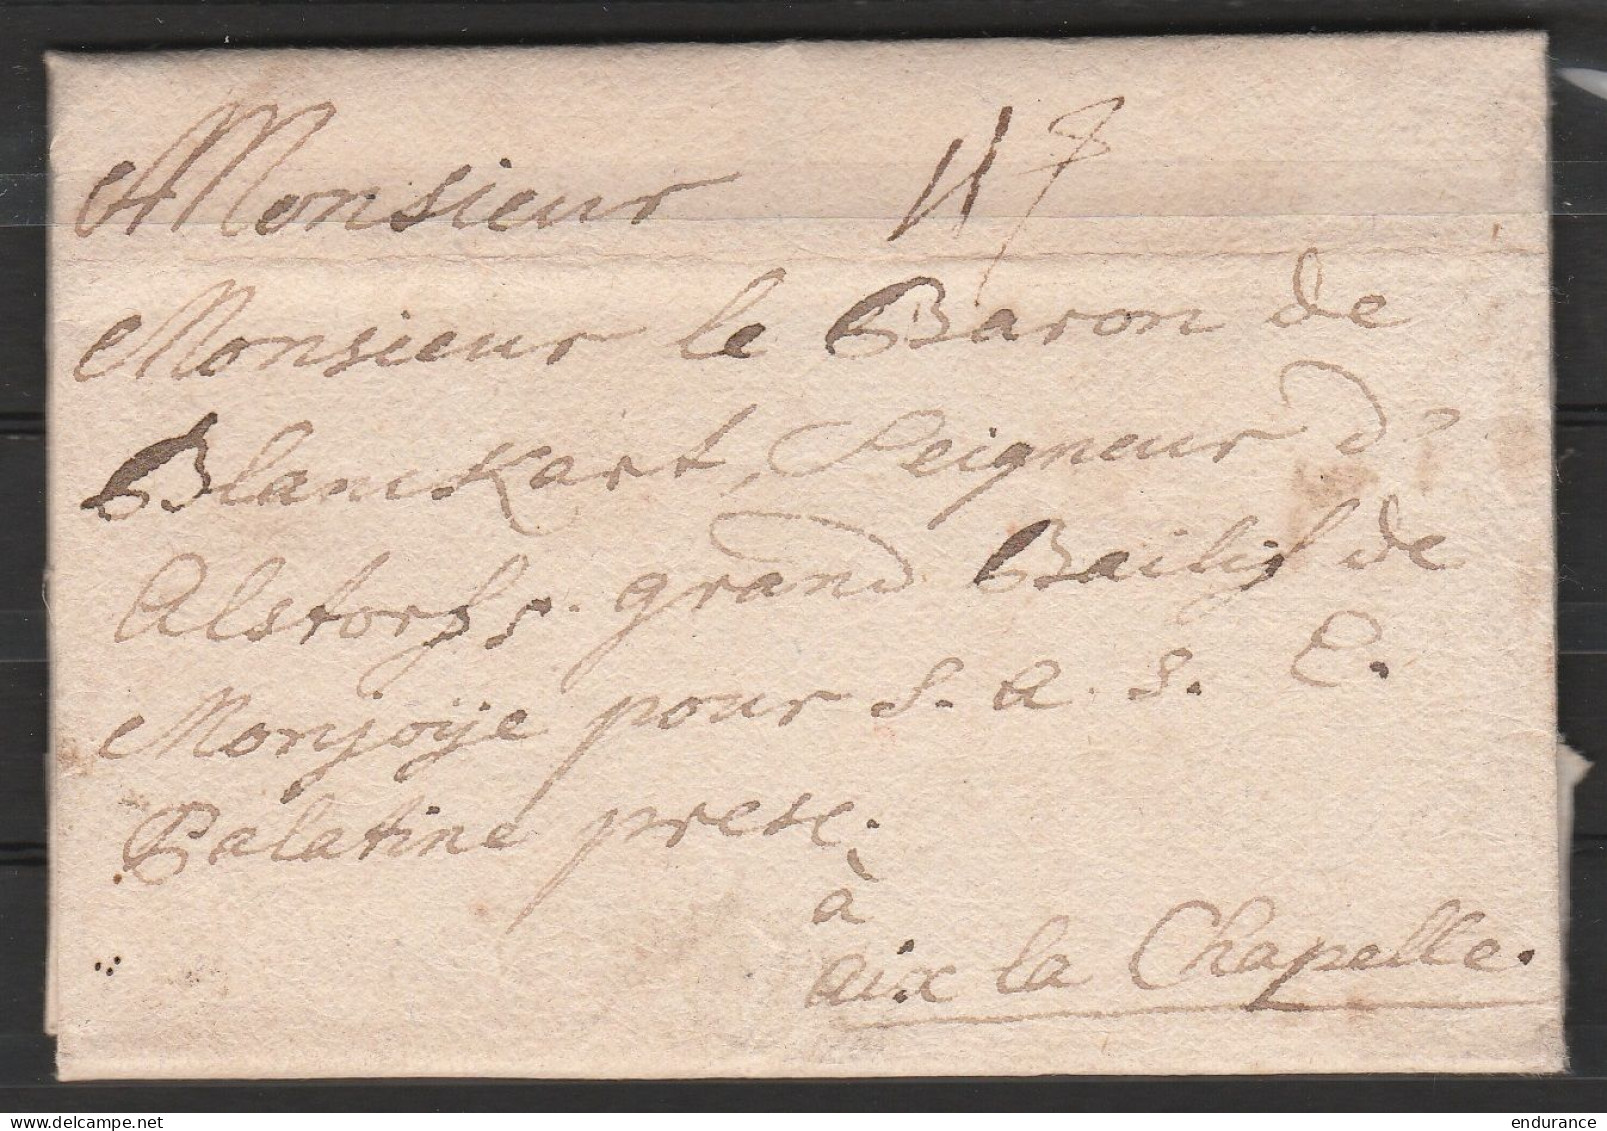 L. En Allemand Datée 28 Avril 1735 De WETZLAR Pour Baron De Blanckart Bailli De Montjoie à AIX-LA-CHAPELLE - 1714-1794 (Pays-Bas Autrichiens)